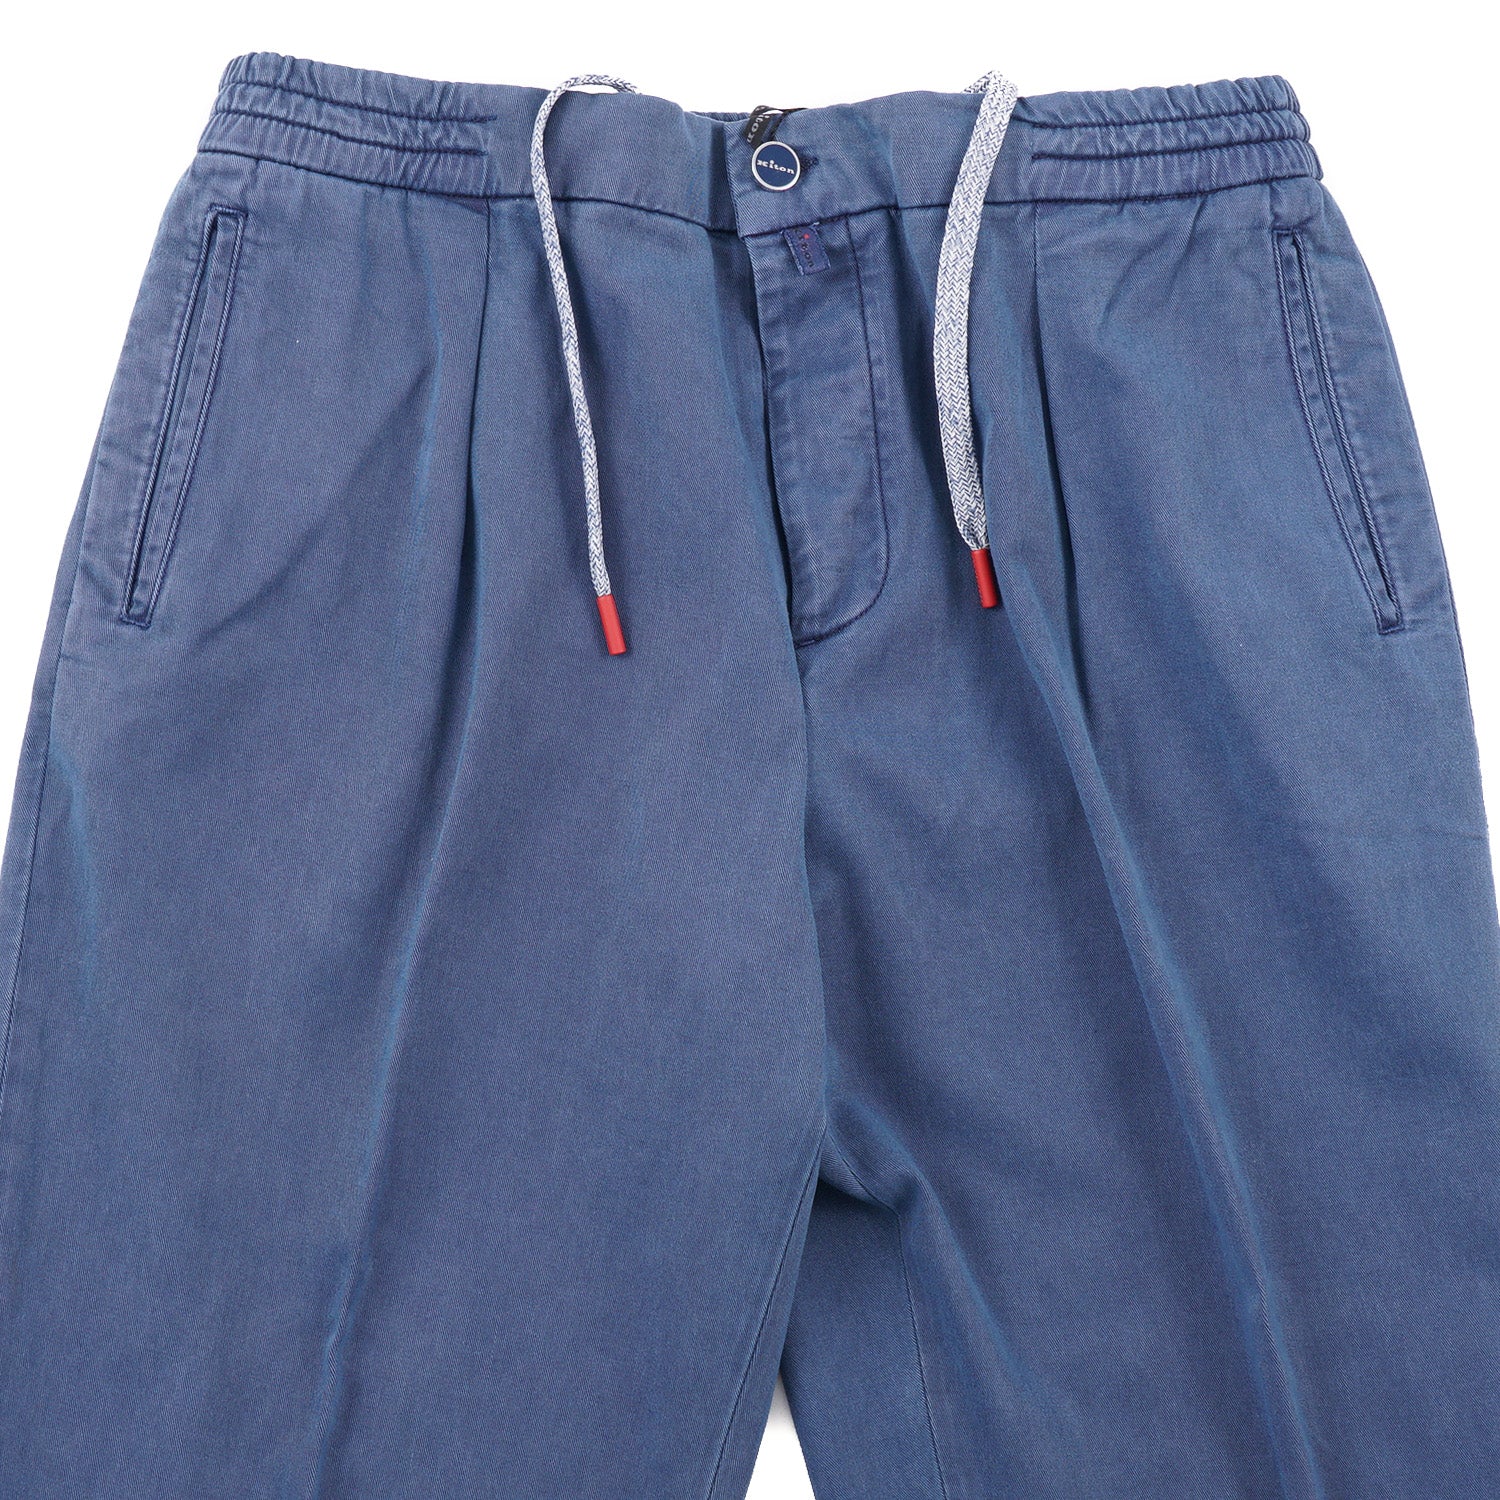 Kiton Stretch Cotton-Blend Jogger Pants - Top Shelf Apparel